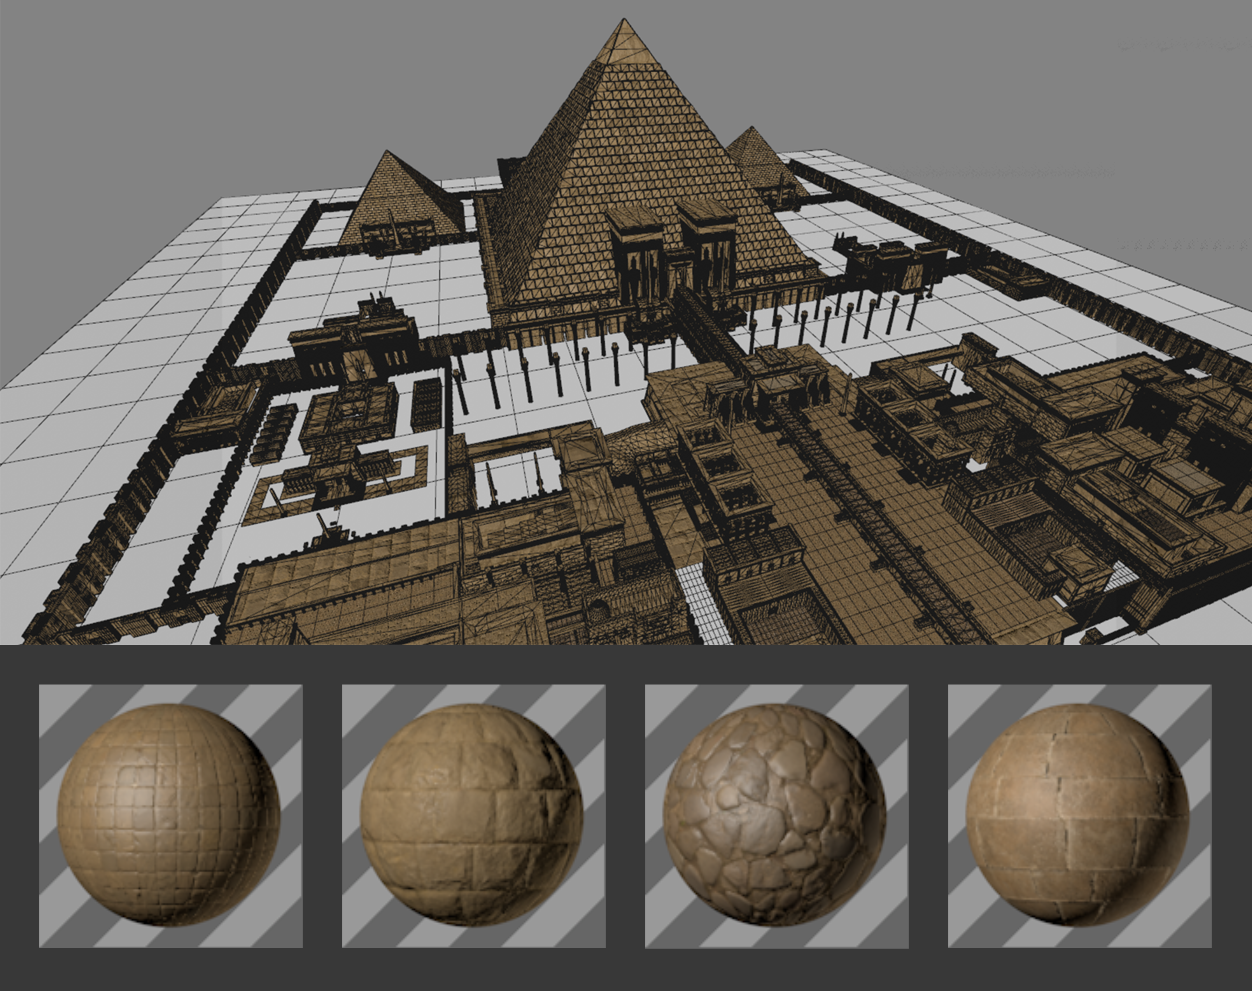 859 埃及金字塔古城建筑群相关3D模型合集 Kitbash3d Egypt